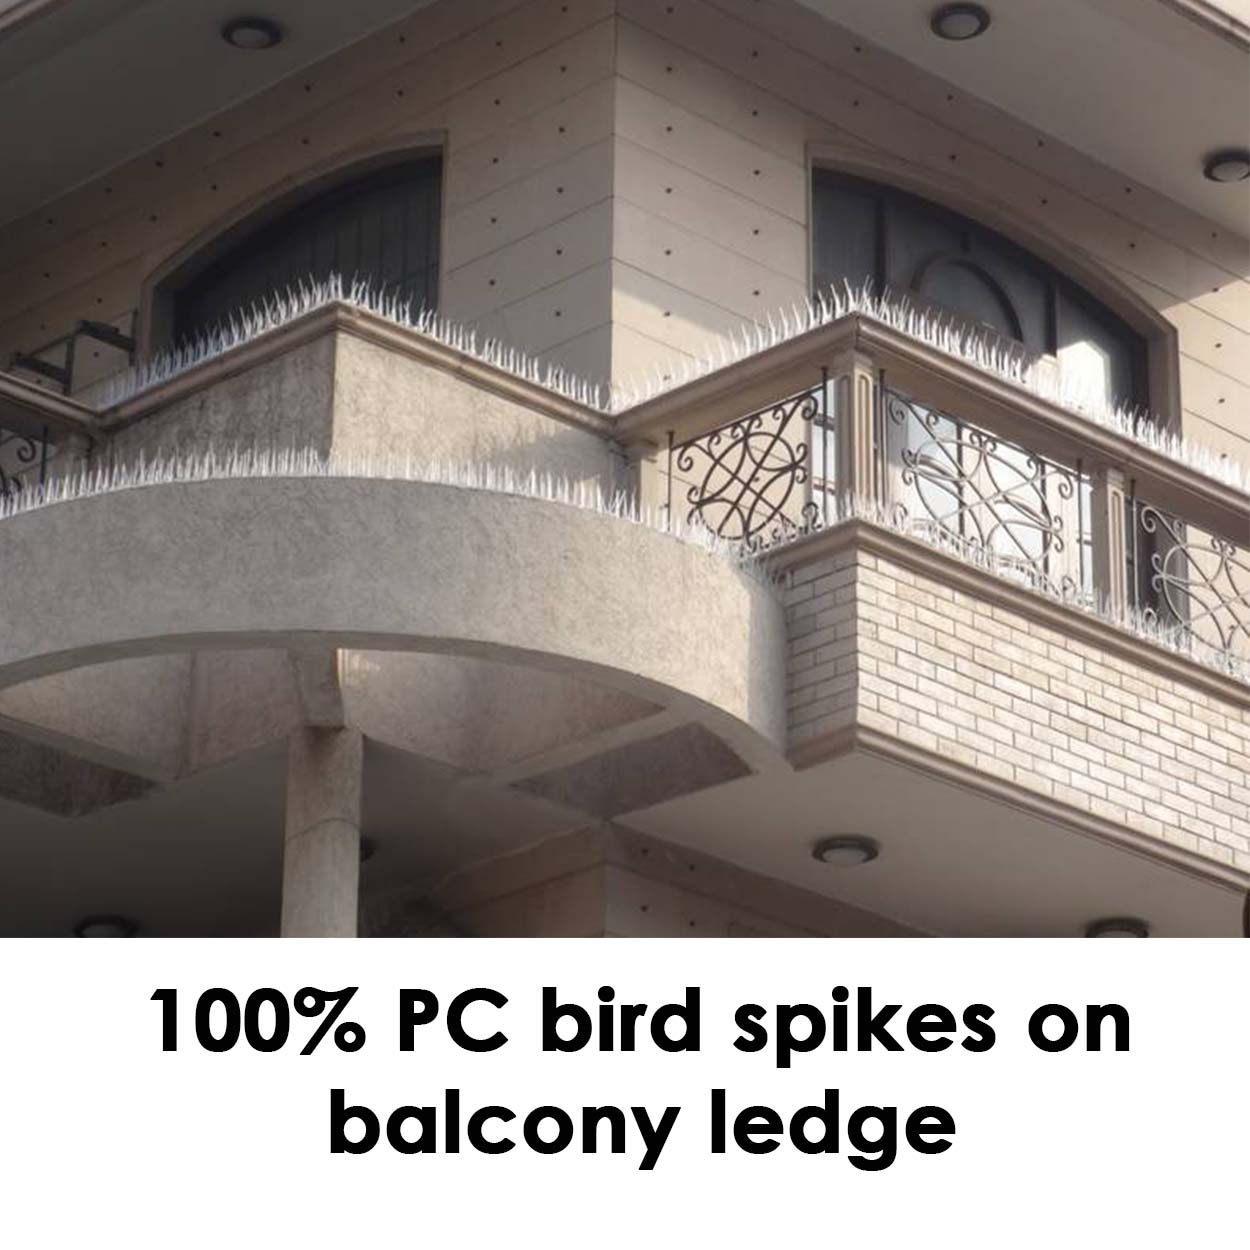 100% PC bird spikes on balcony ledge